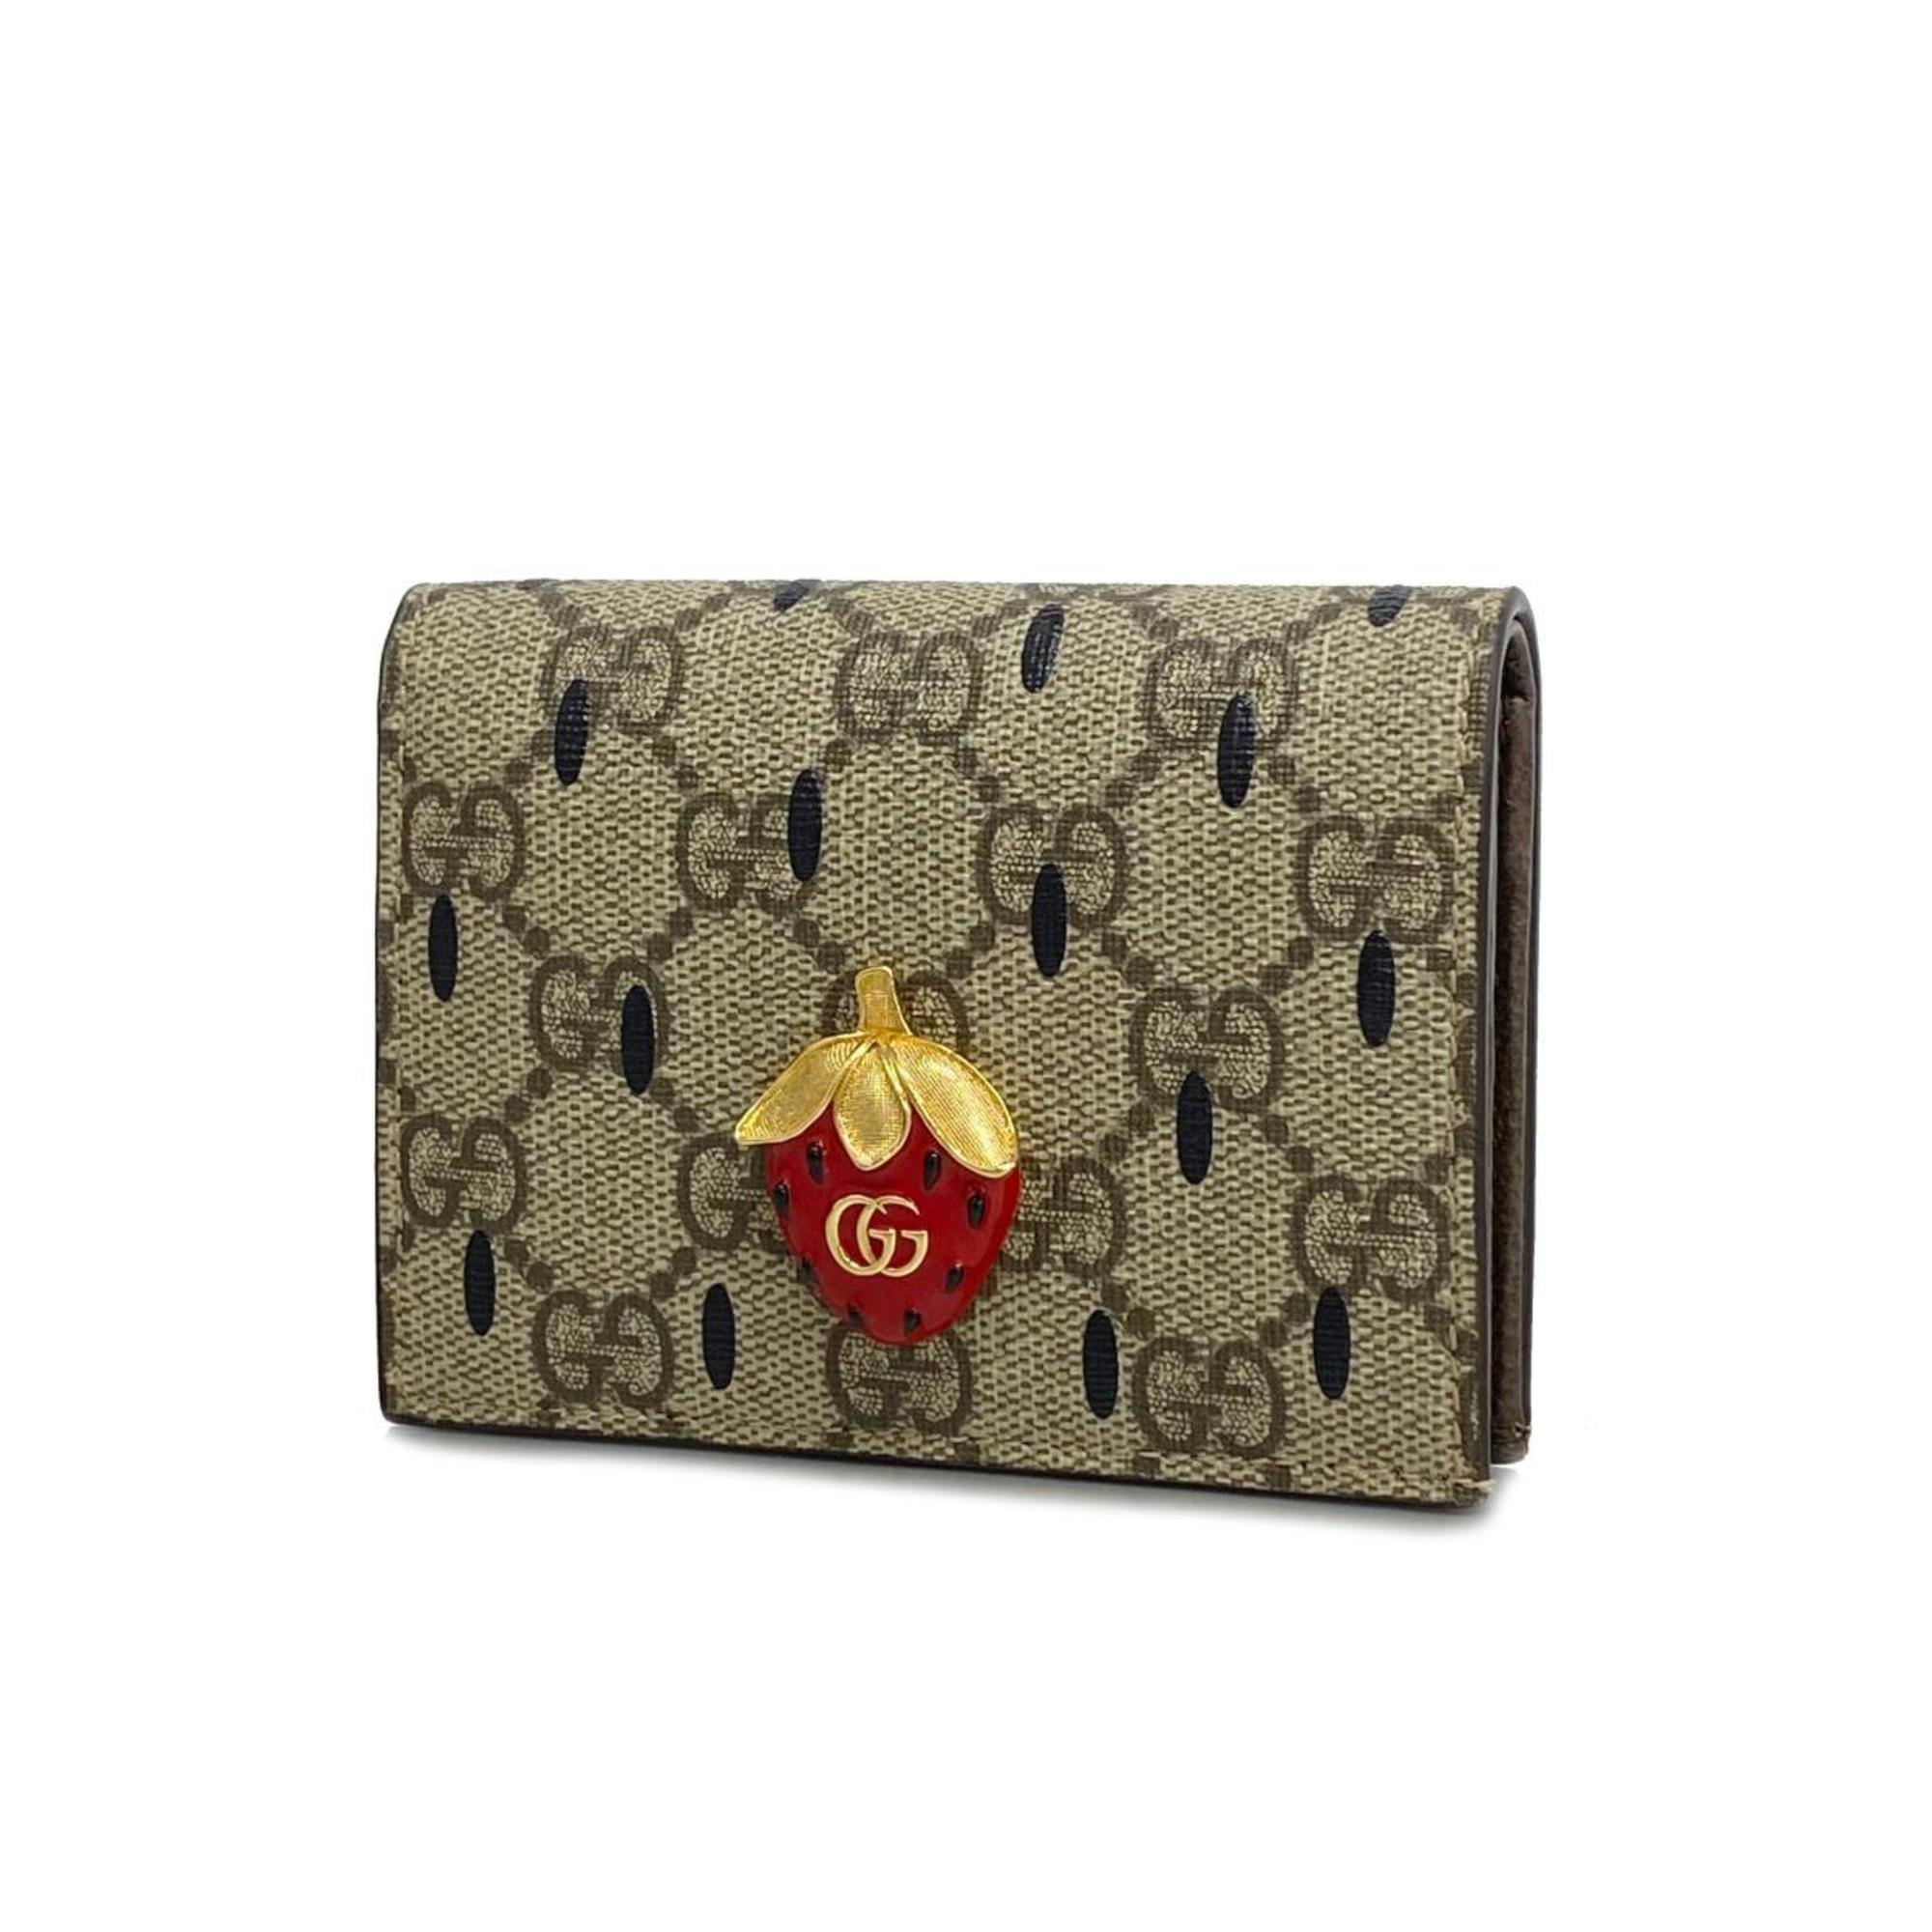 Gucci wallet 726247 brown ladies